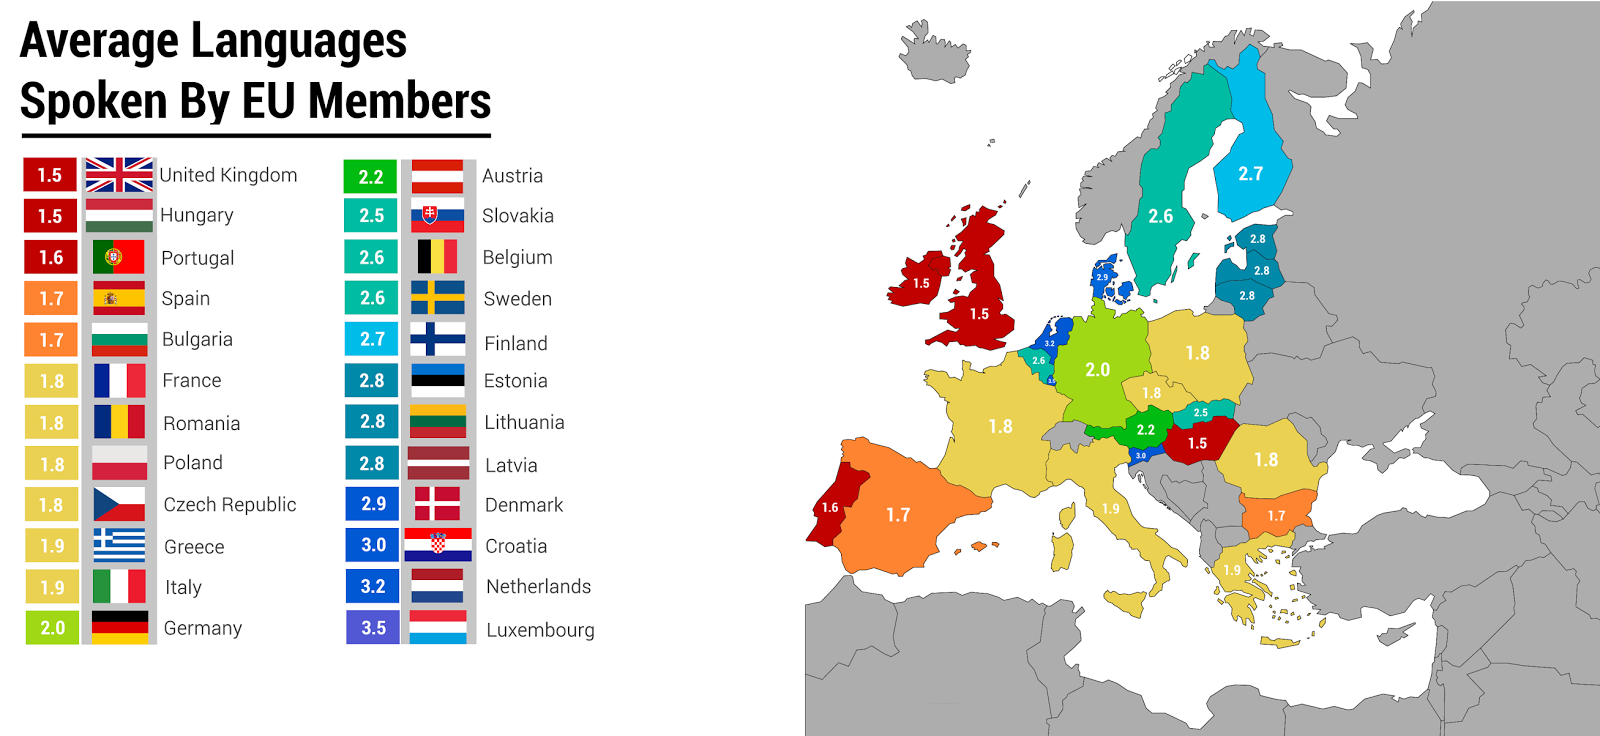 Lingue Parlate In Europa Dove Se Ne Conoscono Di Piu La Mappa